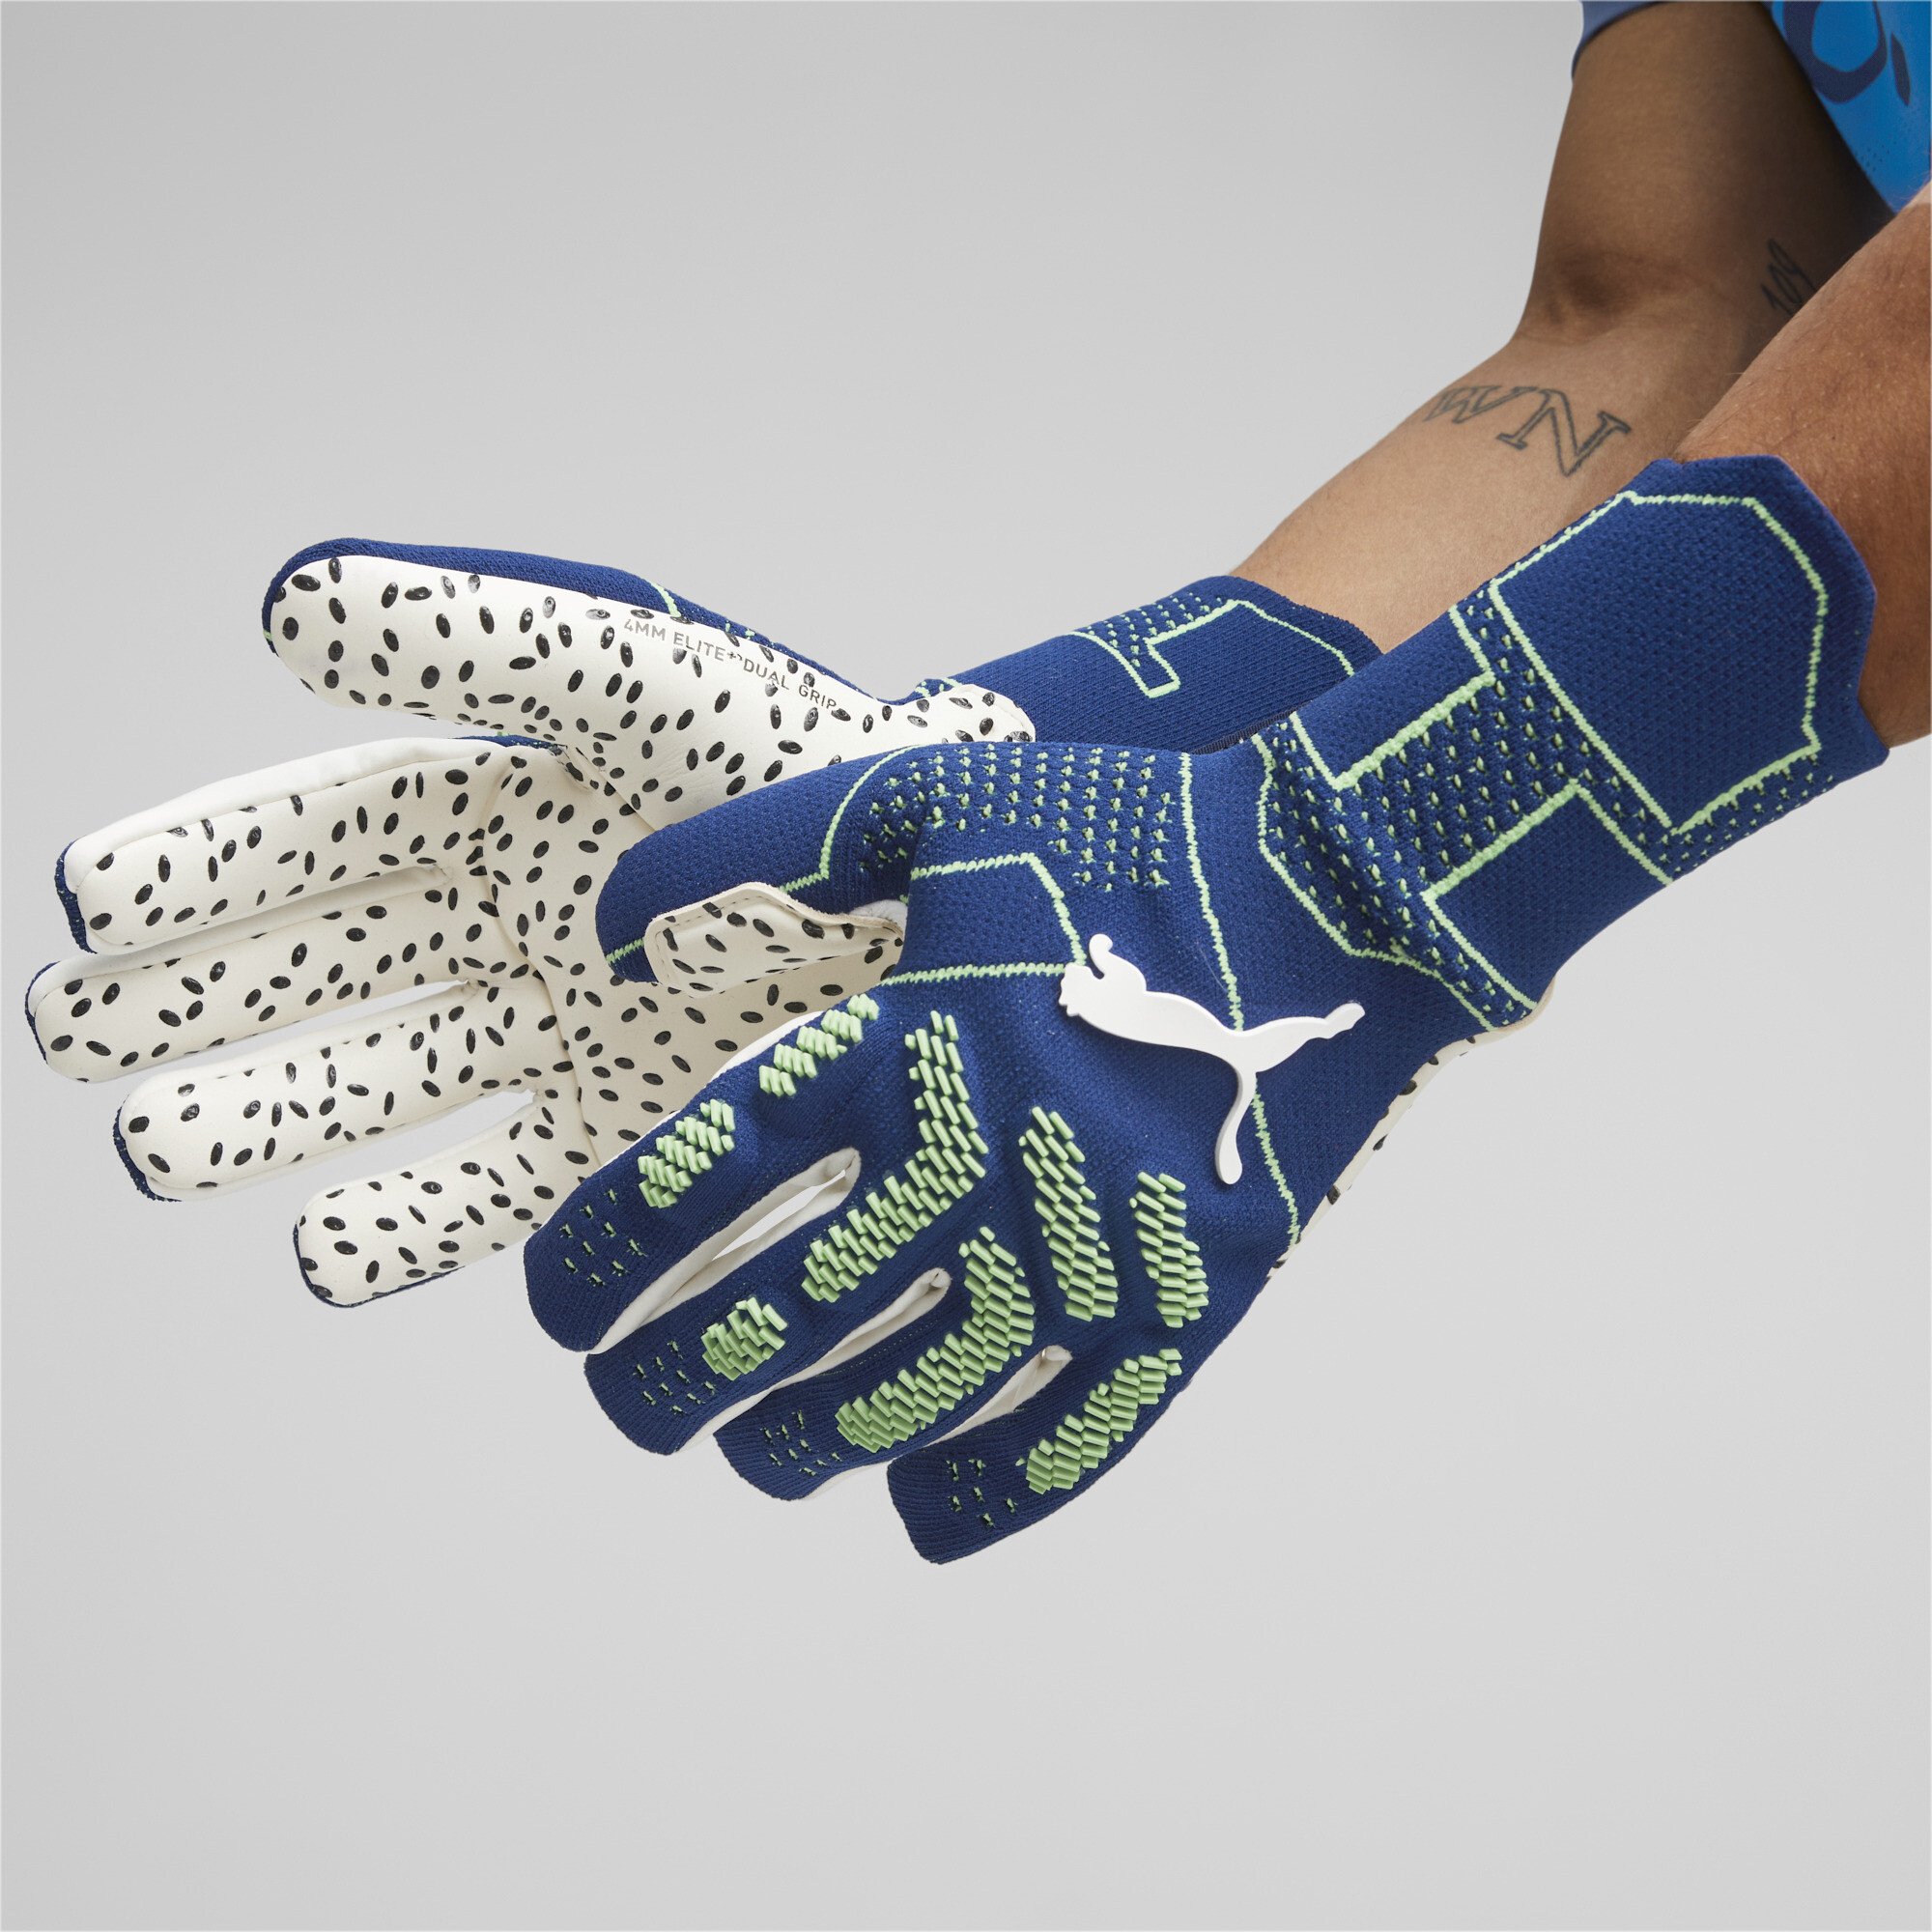 Men's Puma FUTURE Ultimate Negative Cut Football Goalkeeper Gloves, Blue, Size 7.5, Accessories